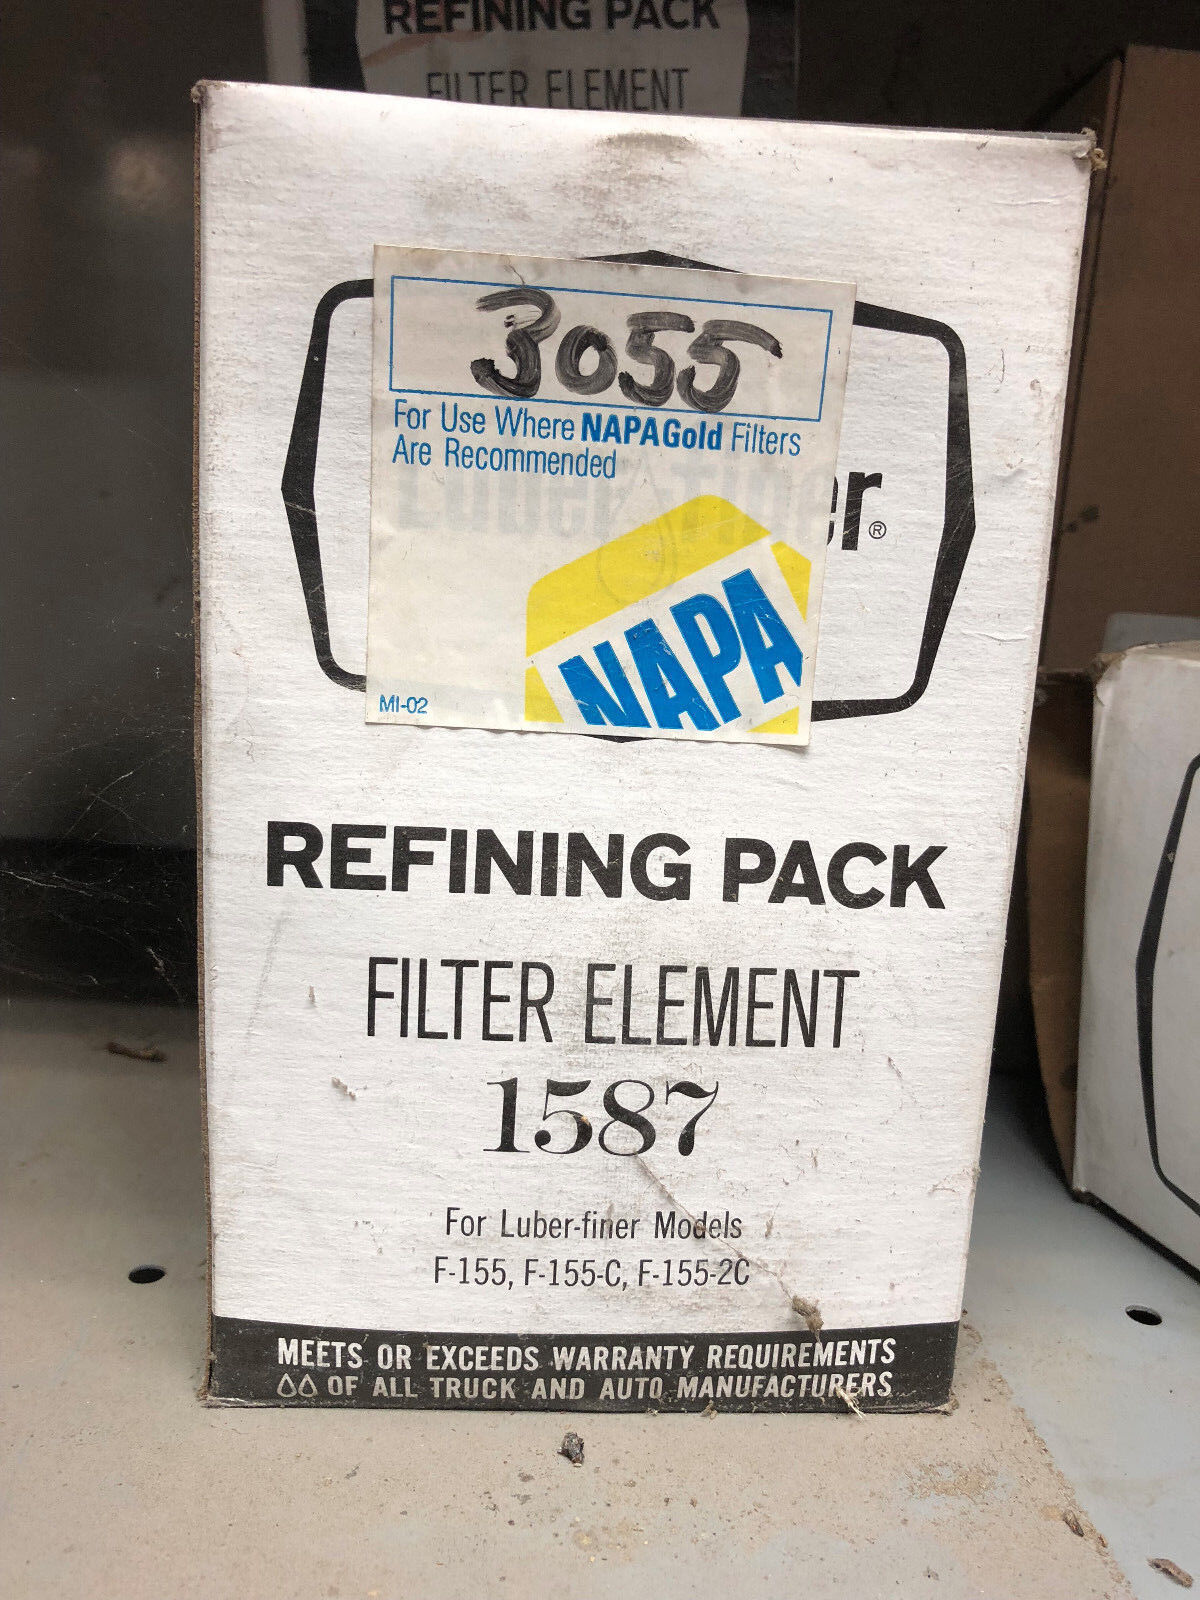 3055 Napa filter